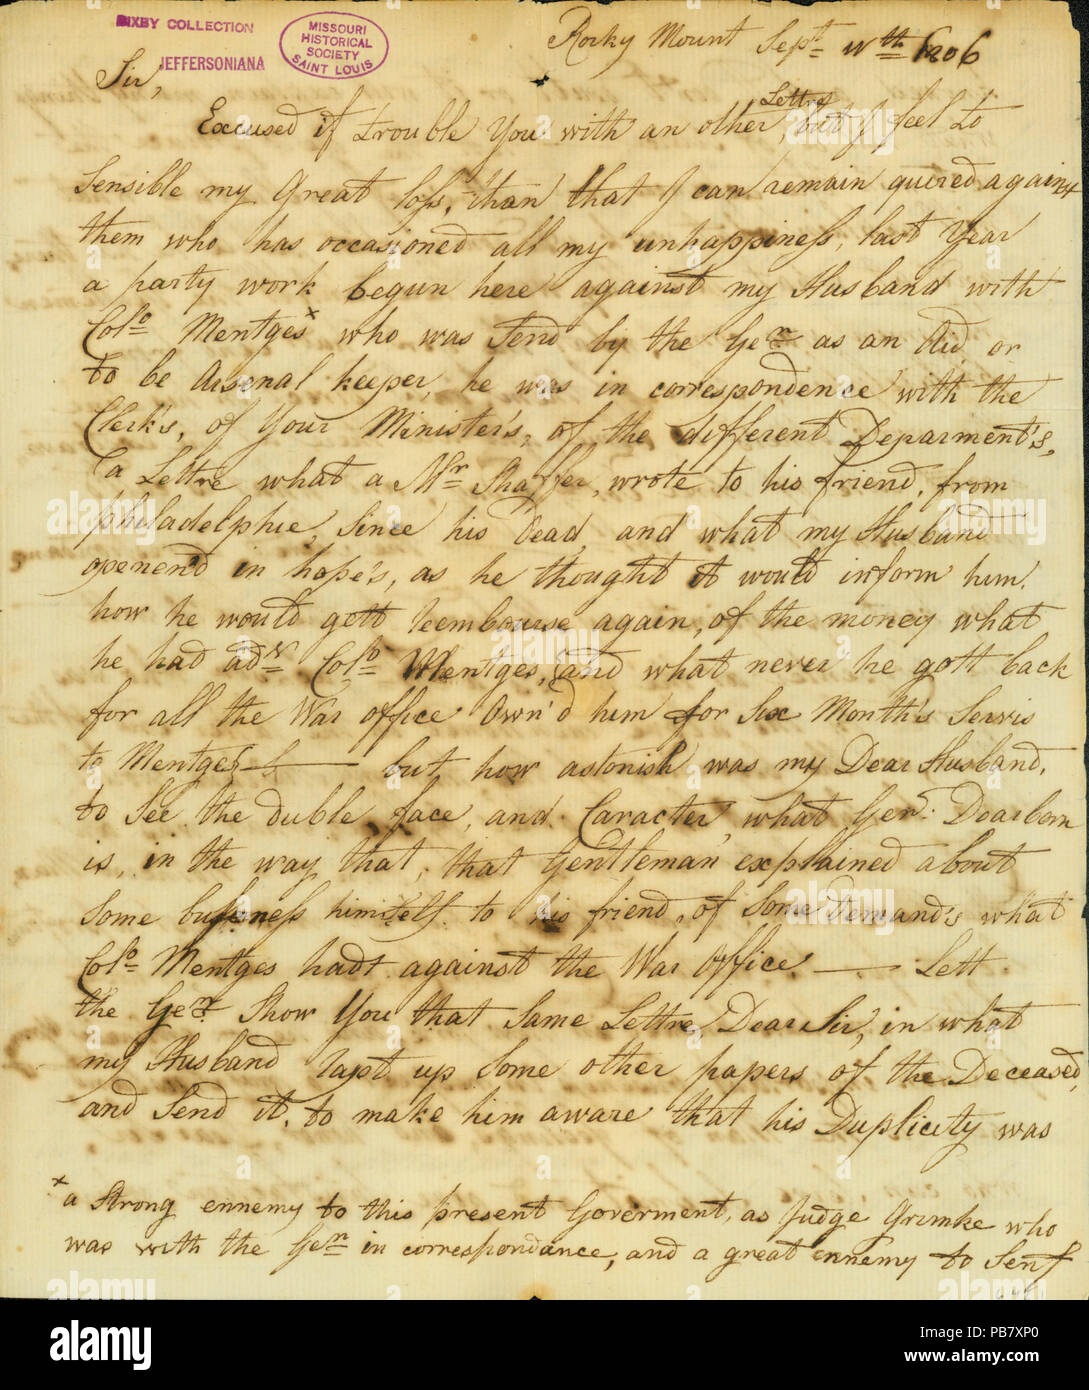 908 Lettre signée Gertrude Joan Senf, Rocky Mount, à Thomas Jefferson, le 11 septembre 1806 Banque D'Images